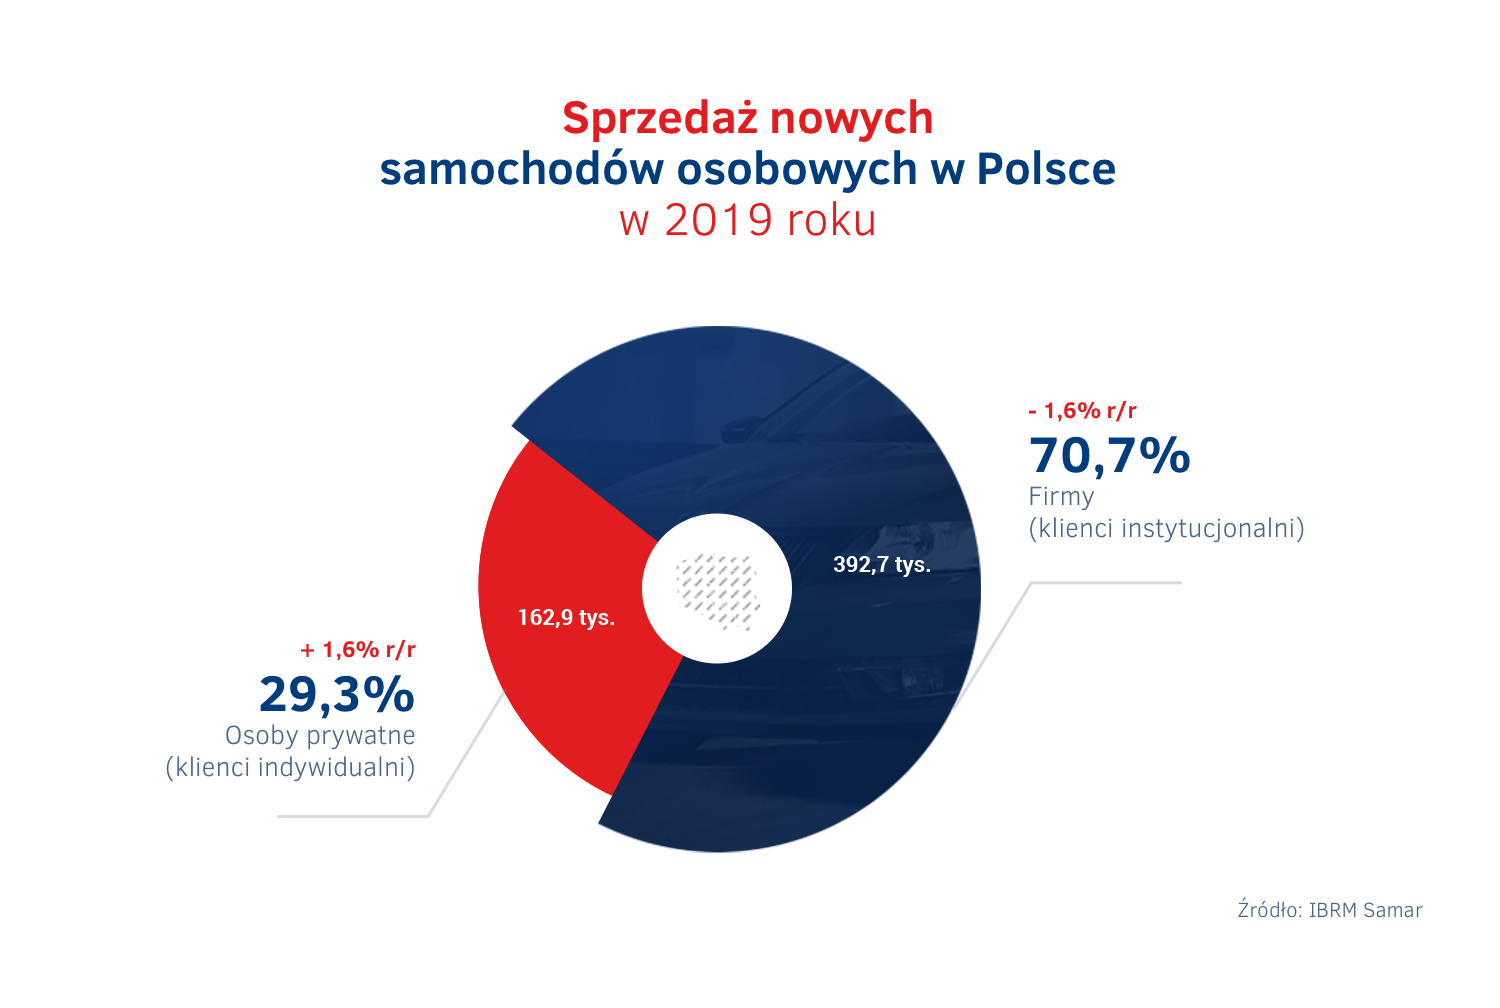 Sprzedaz aut w Polsce 2019 – firmy vs osoby prywatne